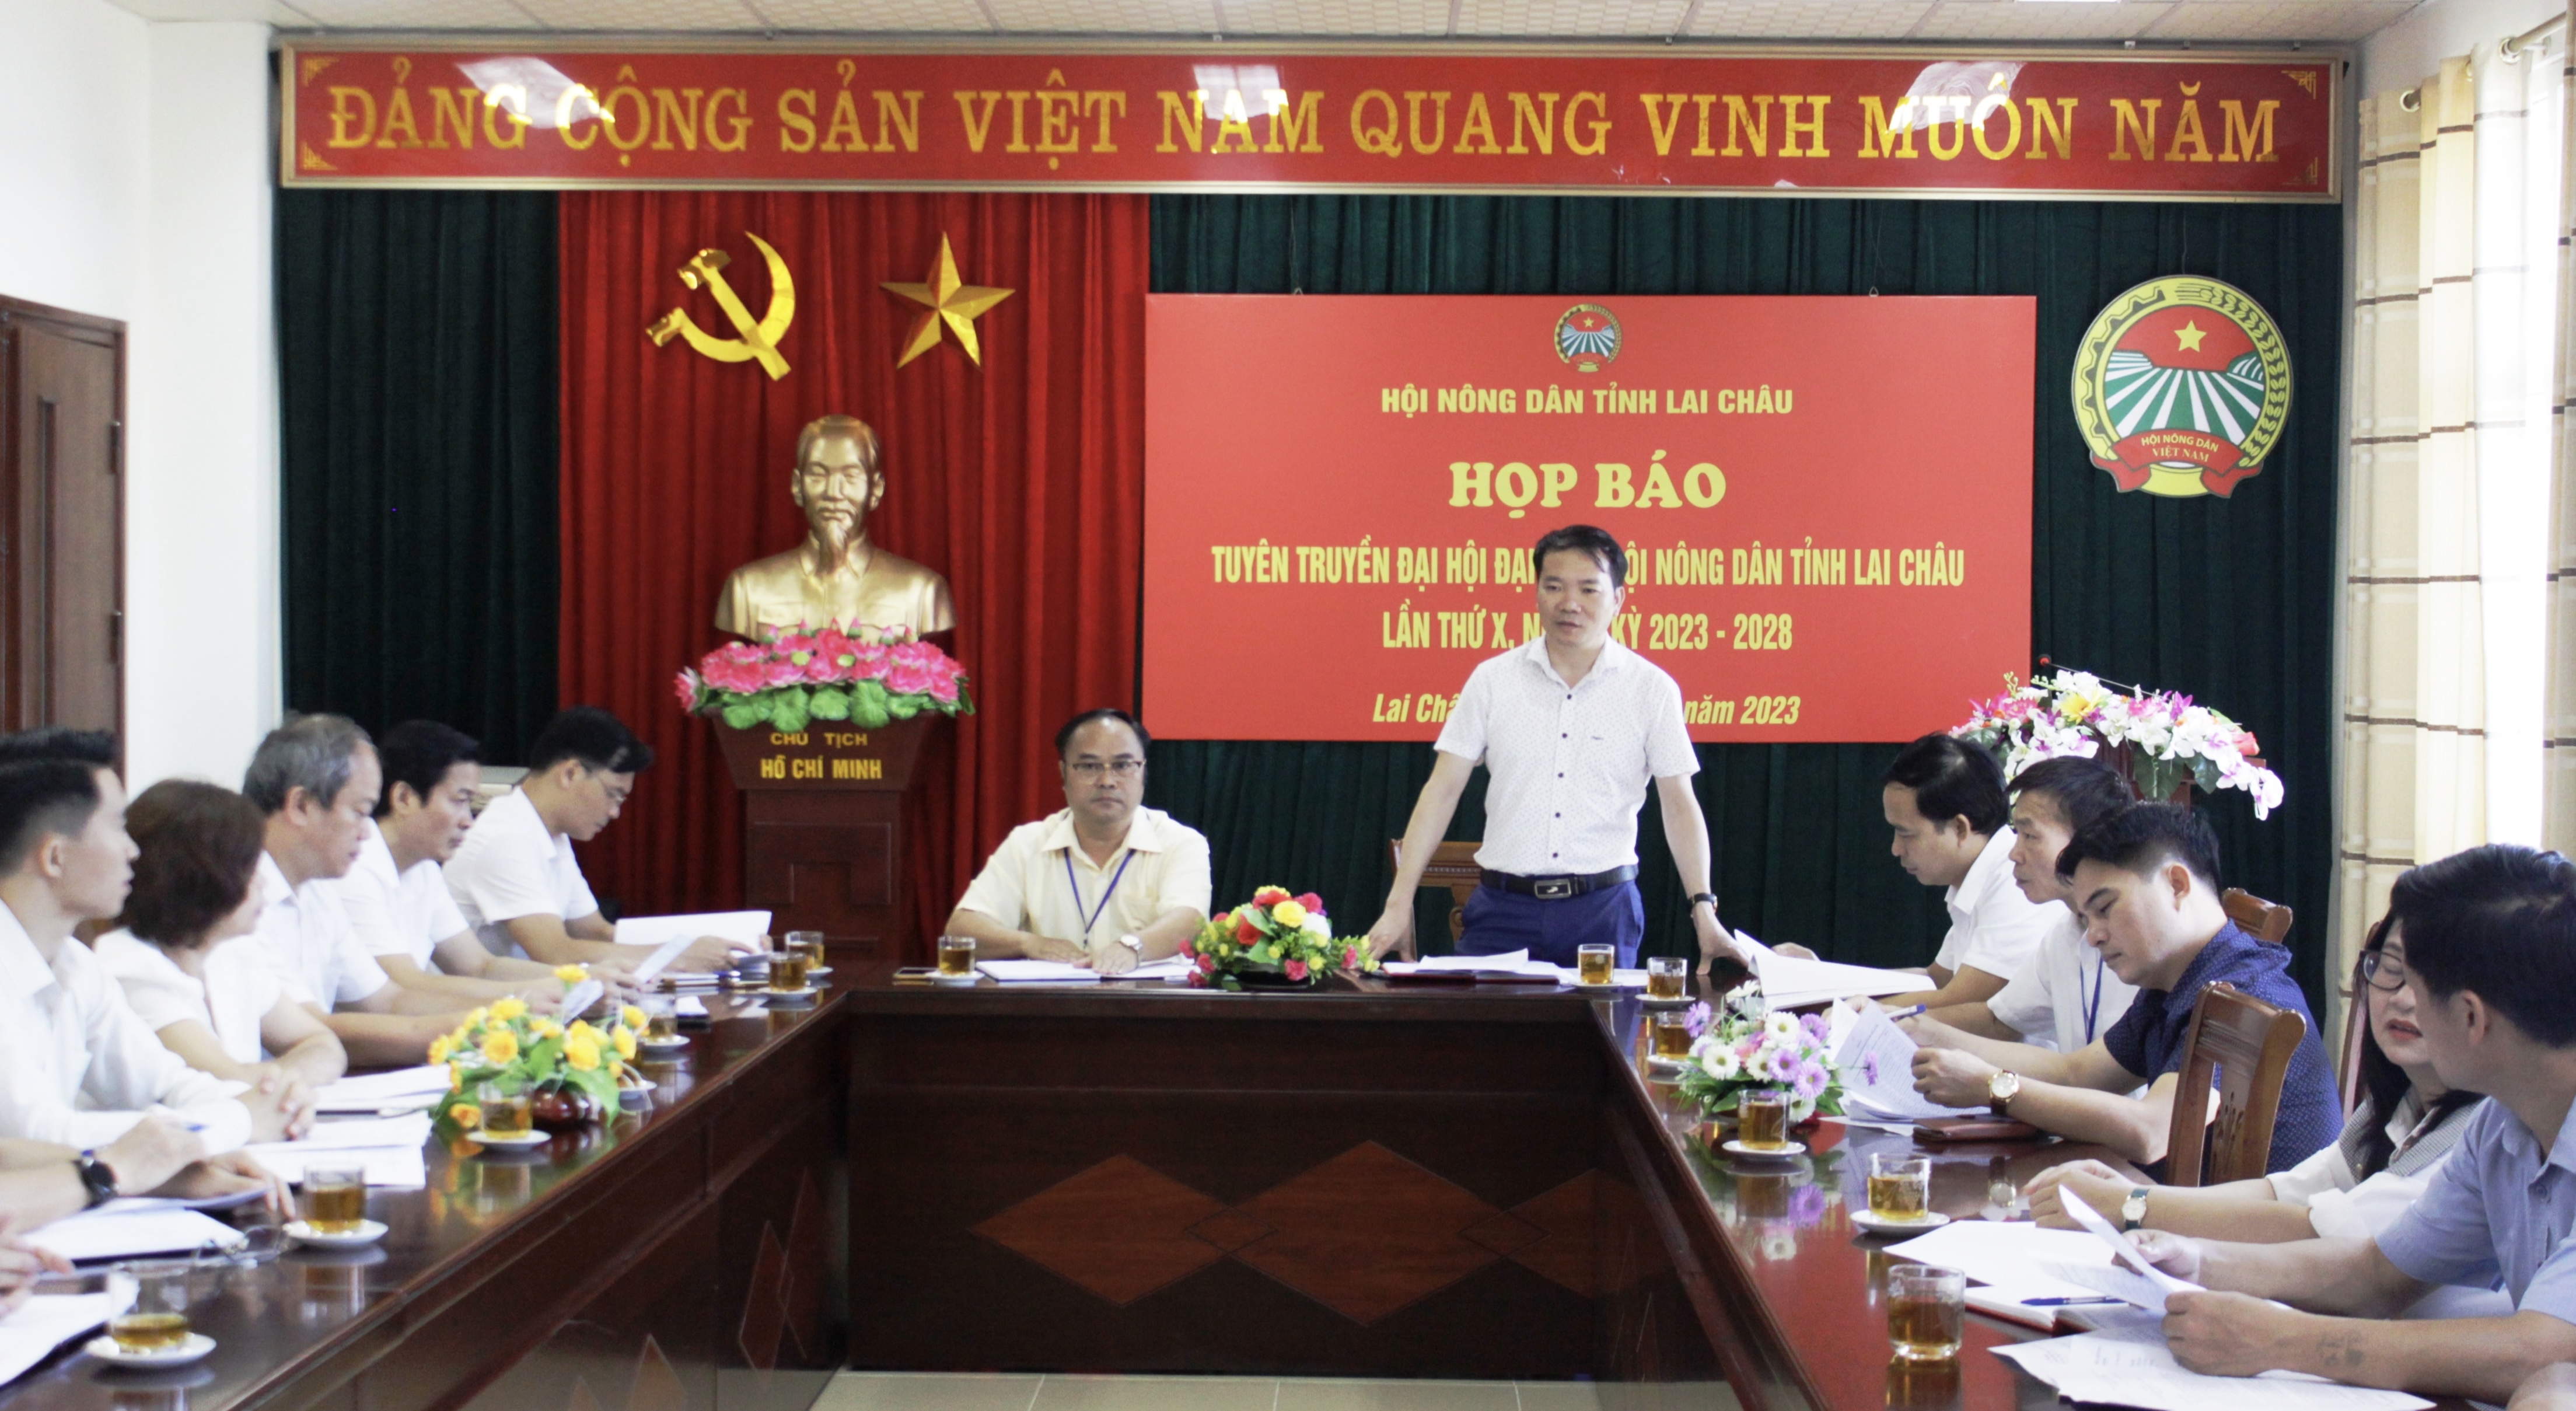 Đồng chí Lê Chí Công - Phó trưởng Ban Tuyên giáo Tỉnh ủy kết luận buổi họp báo